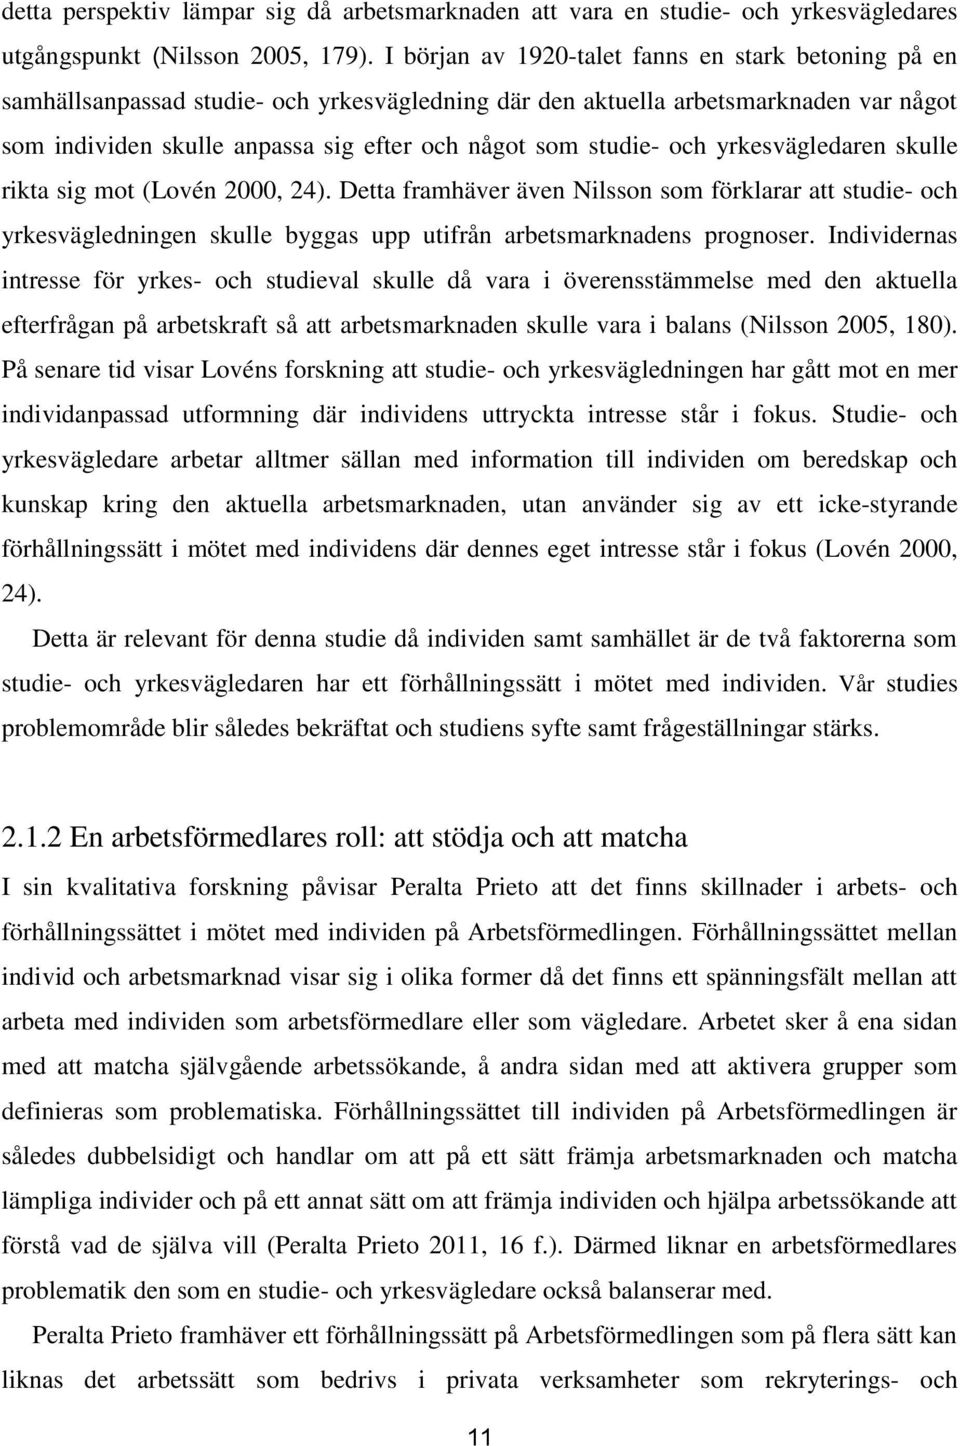 studie- och yrkesvägledaren skulle rikta sig mot (Lovén 2000, 24). Detta framhäver även Nilsson som förklarar att studie- och yrkesvägledningen skulle byggas upp utifrån arbetsmarknadens prognoser.